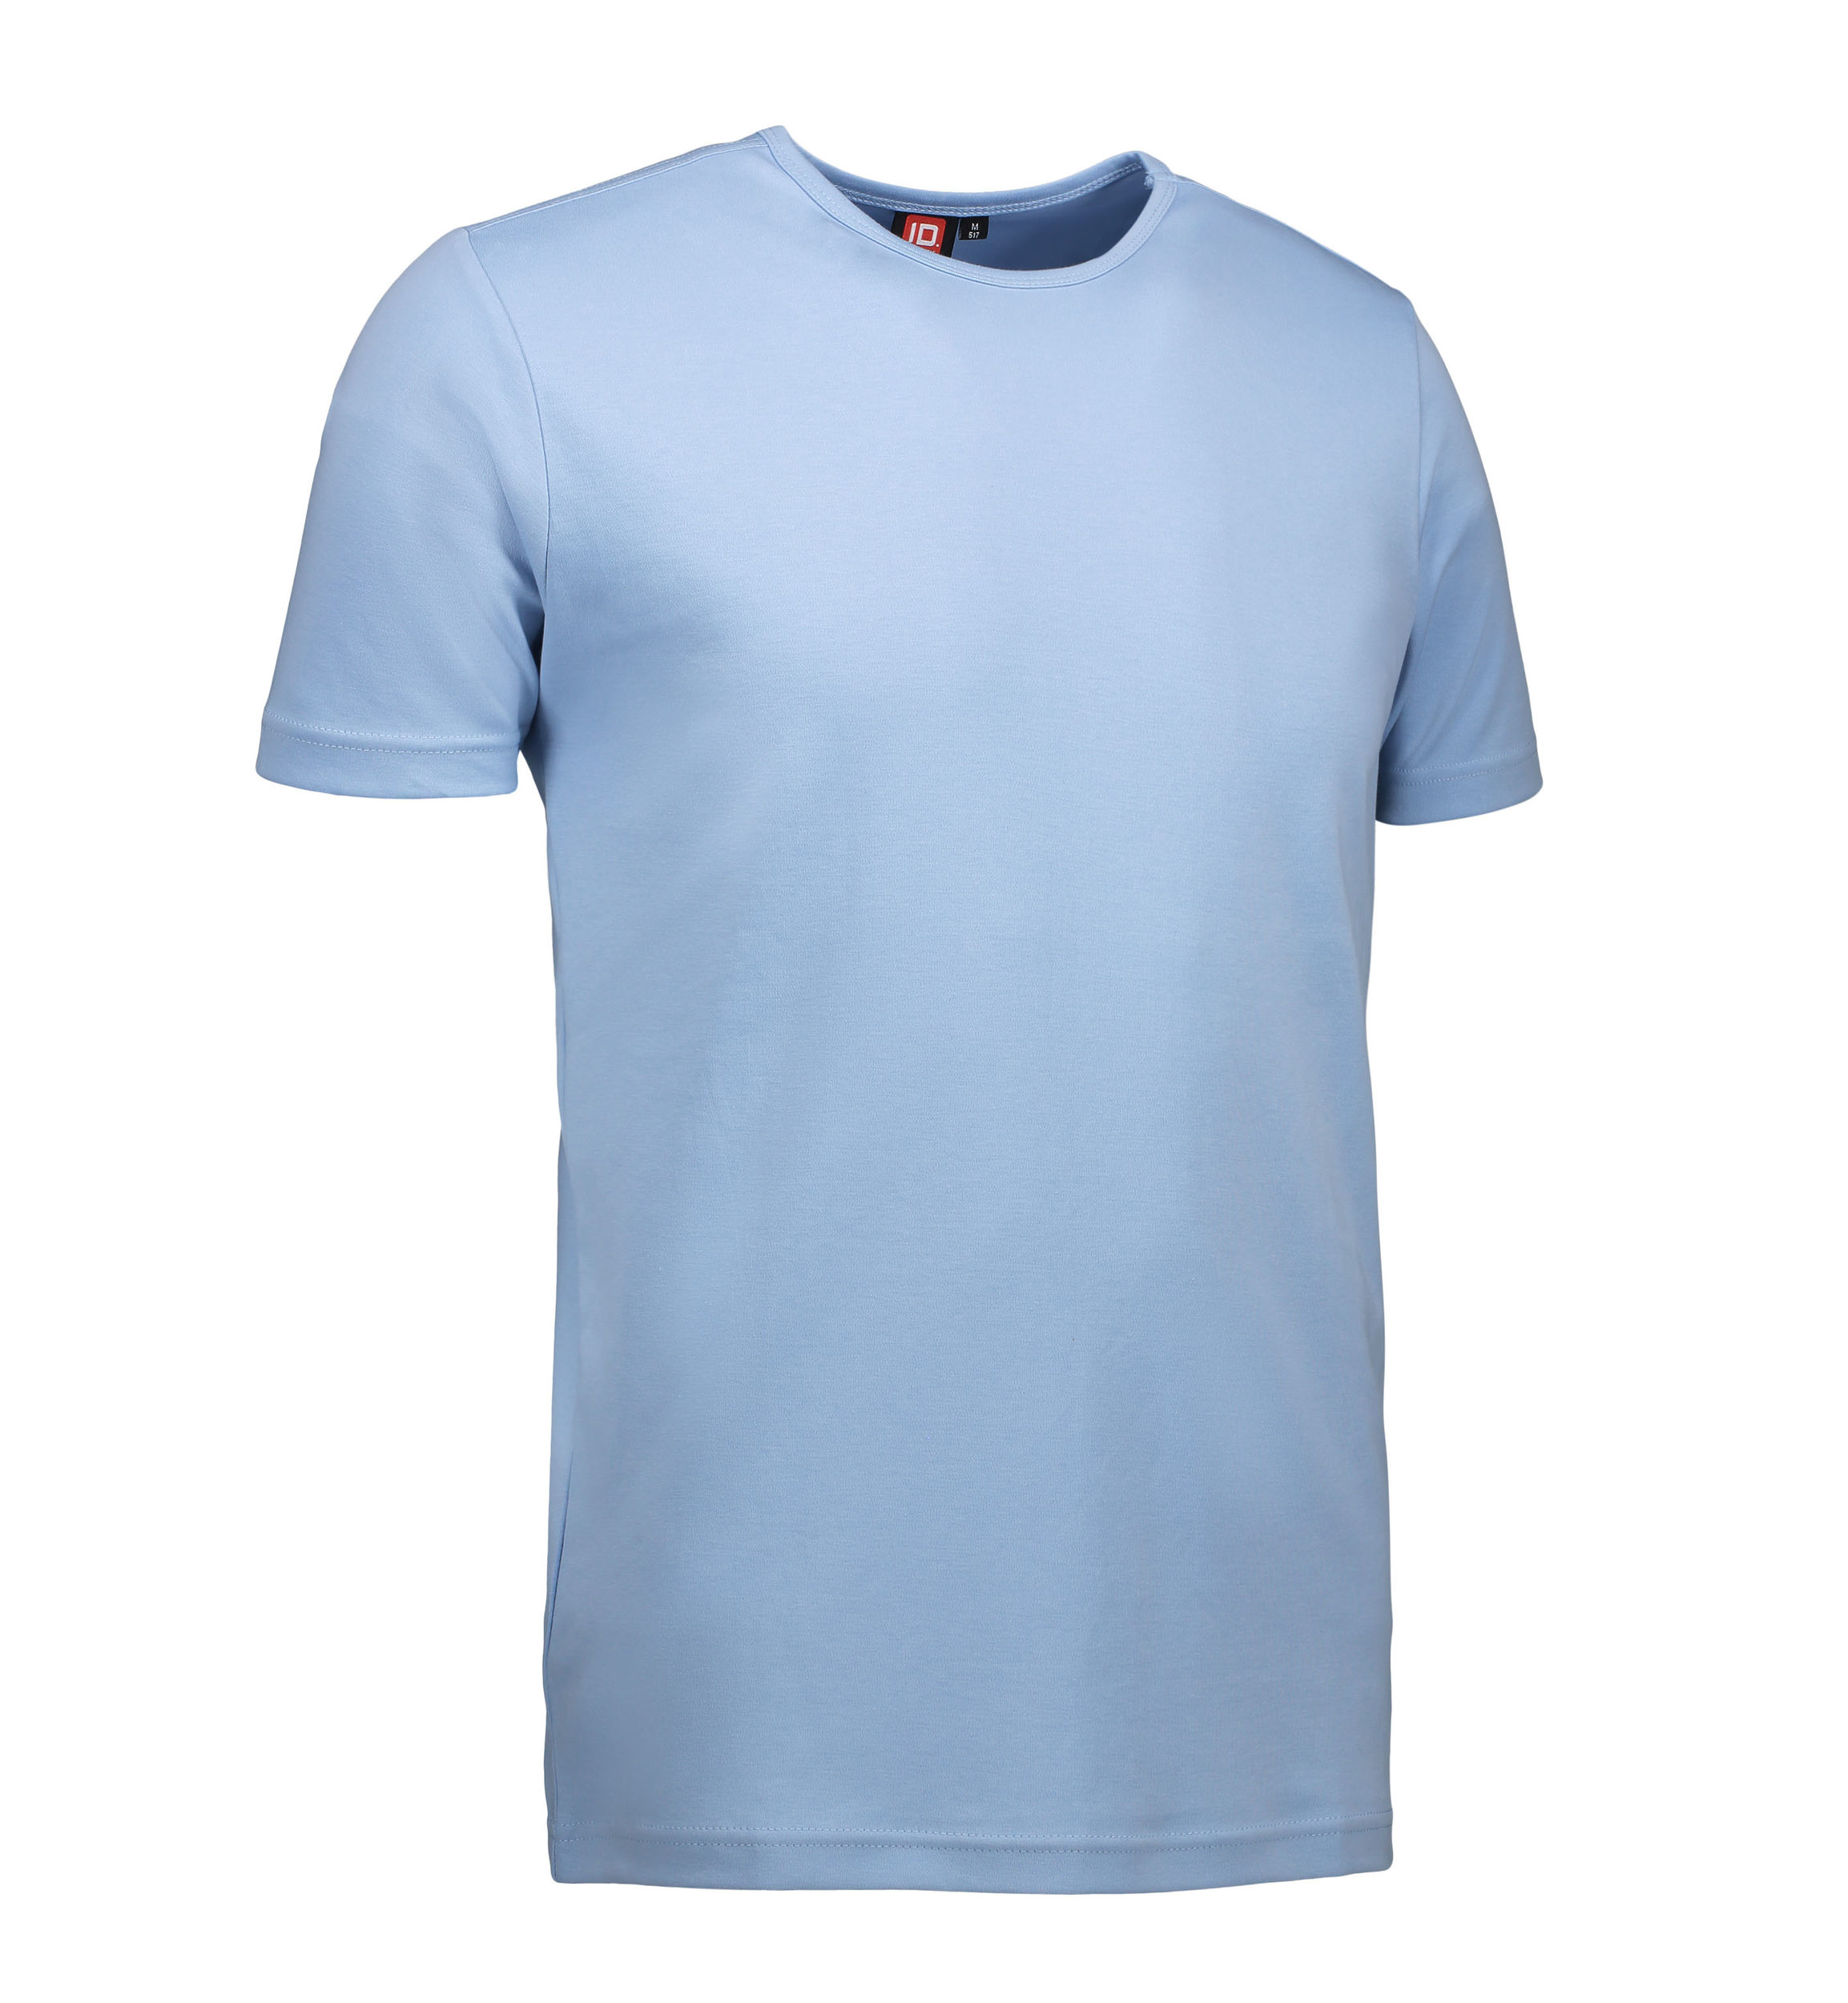 Billede af Lyseblå t-shirt med rund hals til mænd - XL hos Sygeplejebutikken.dk